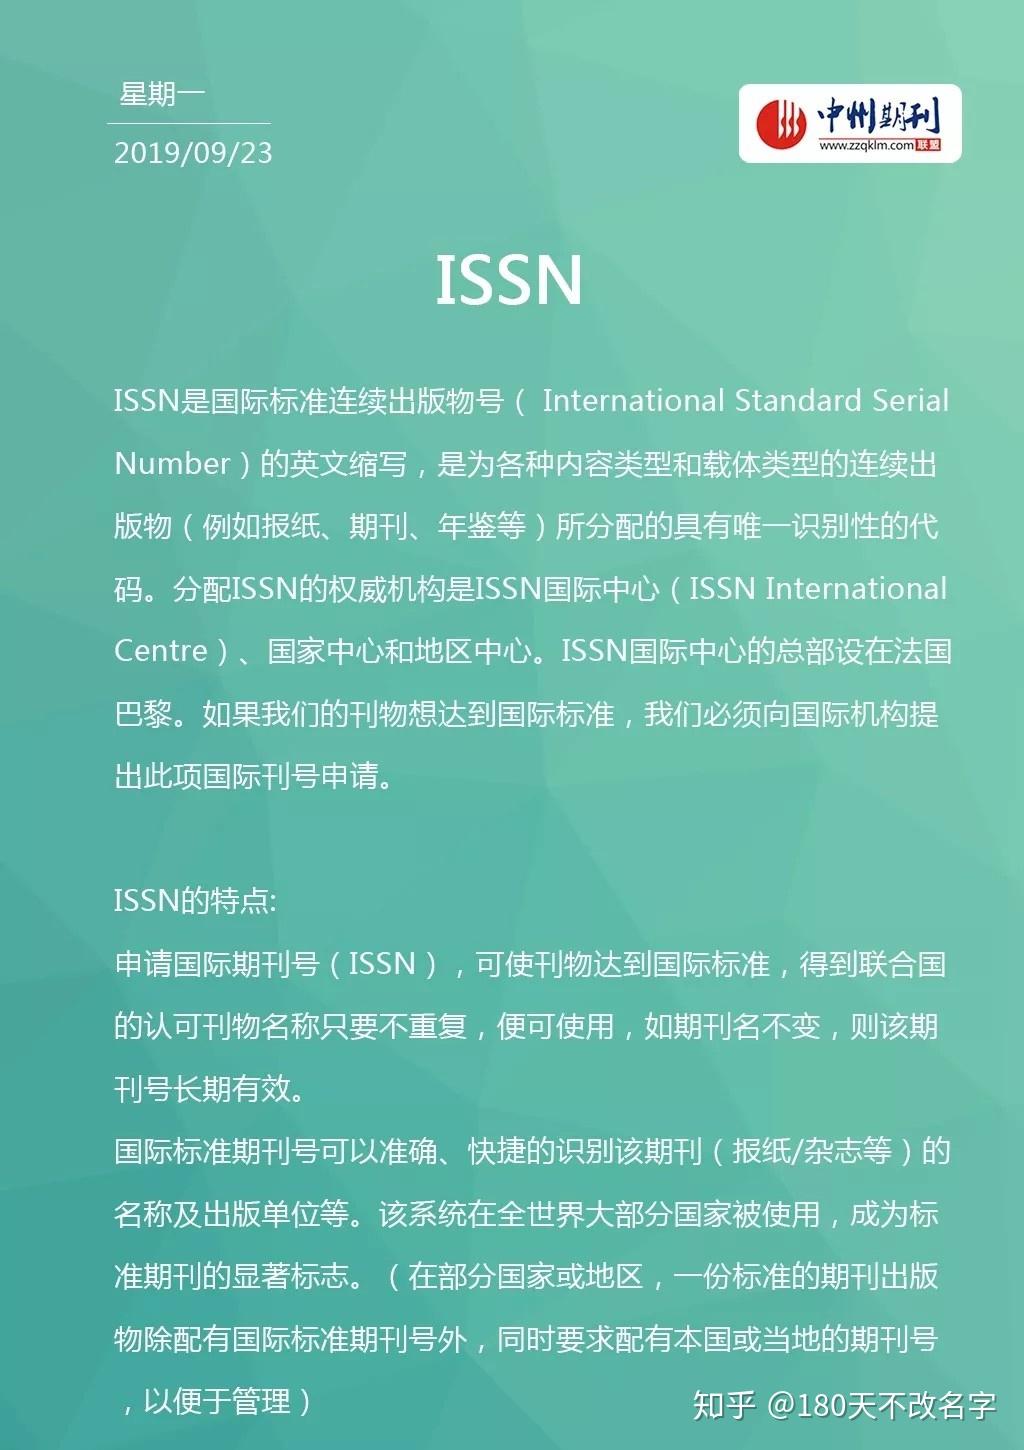 什么是ISSN?